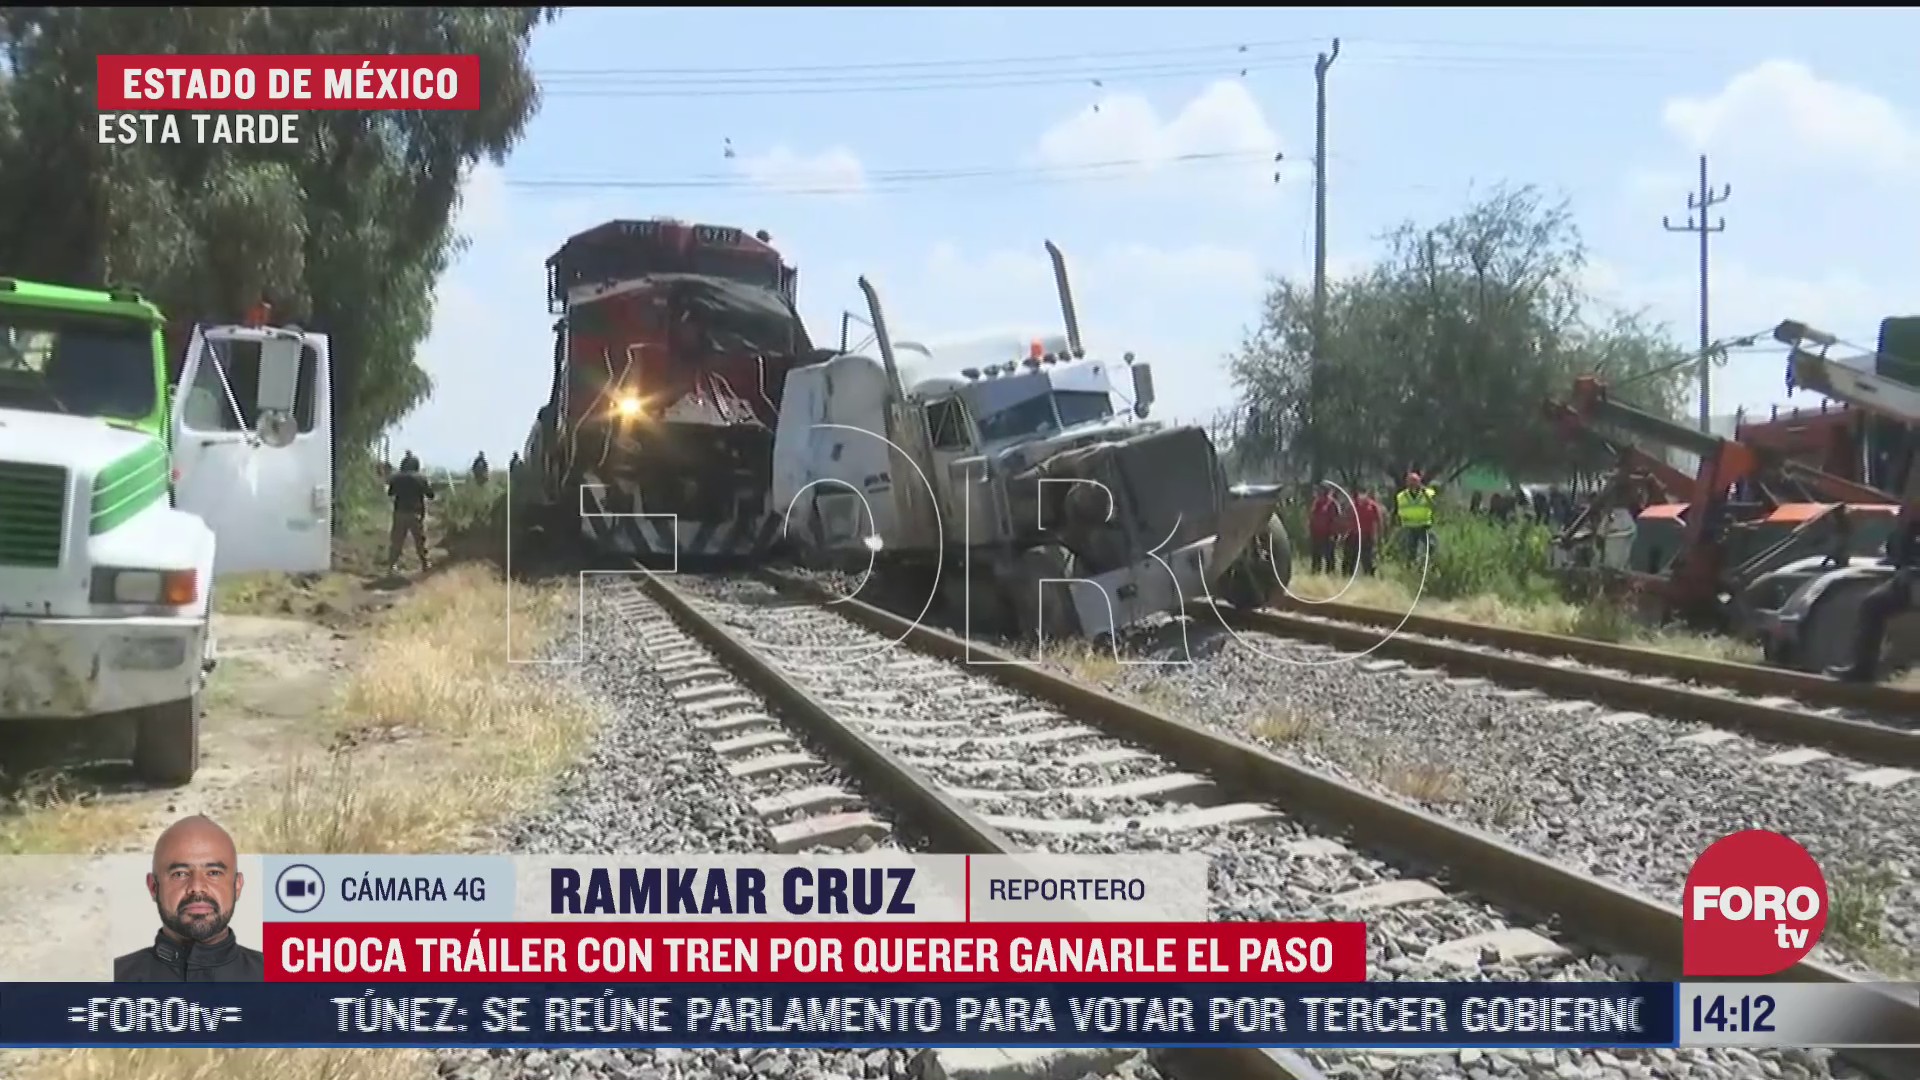 choca trailer por querer ganarle el paso al tren en el estado de mexico